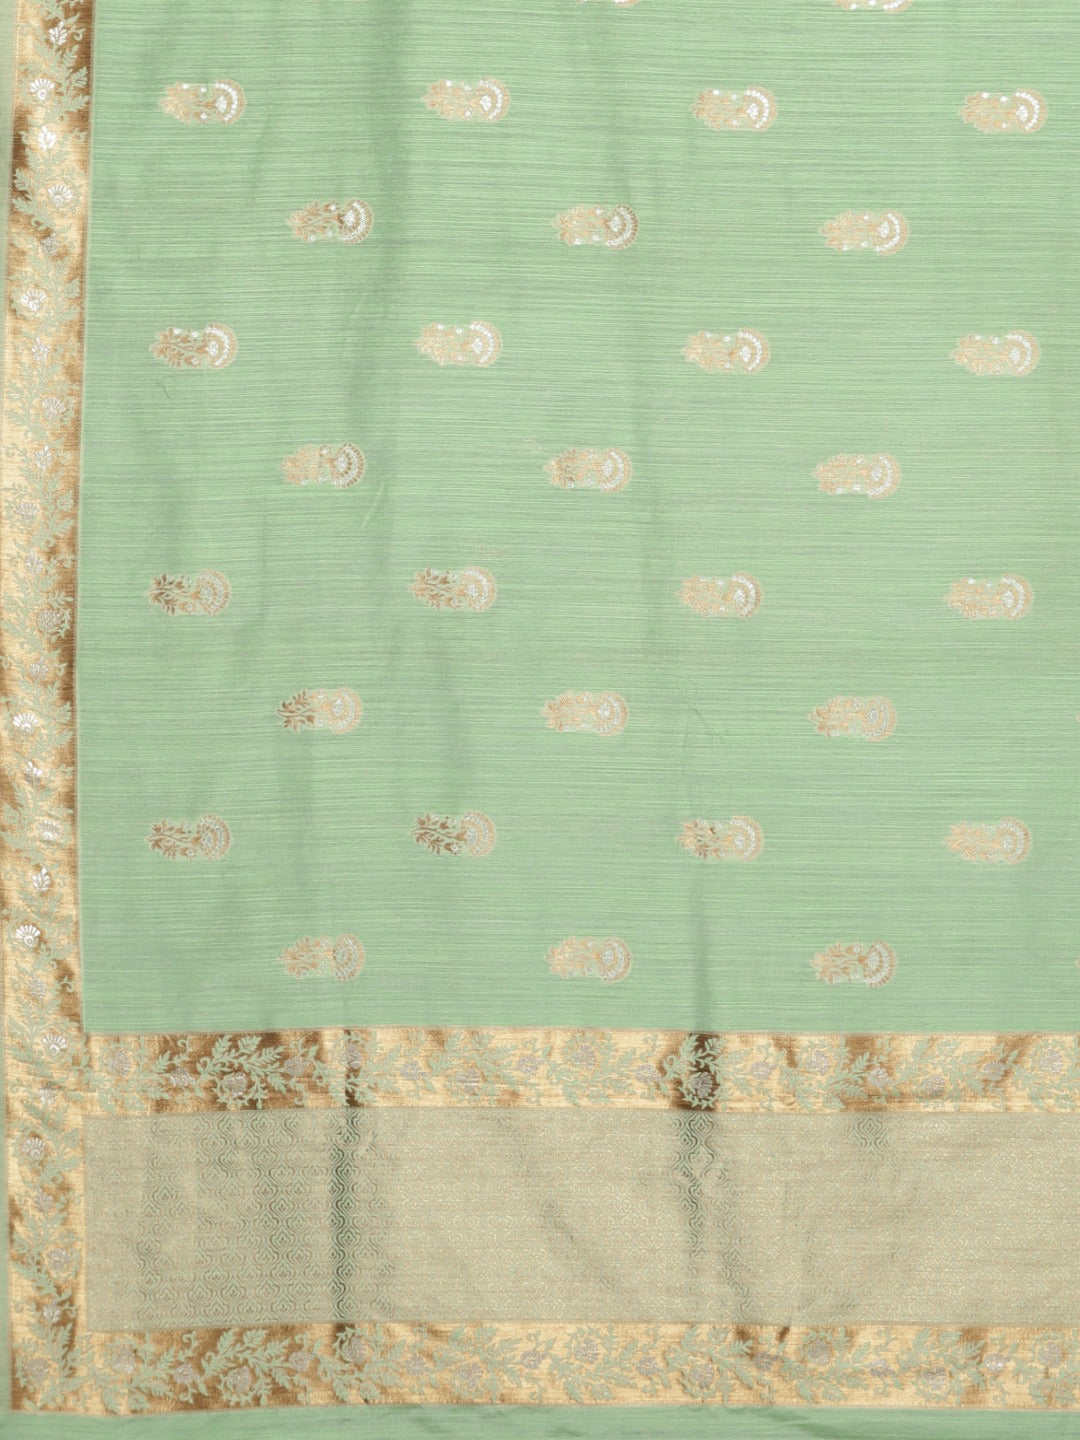 Neeru's Green Color Banaras Fabric Saree